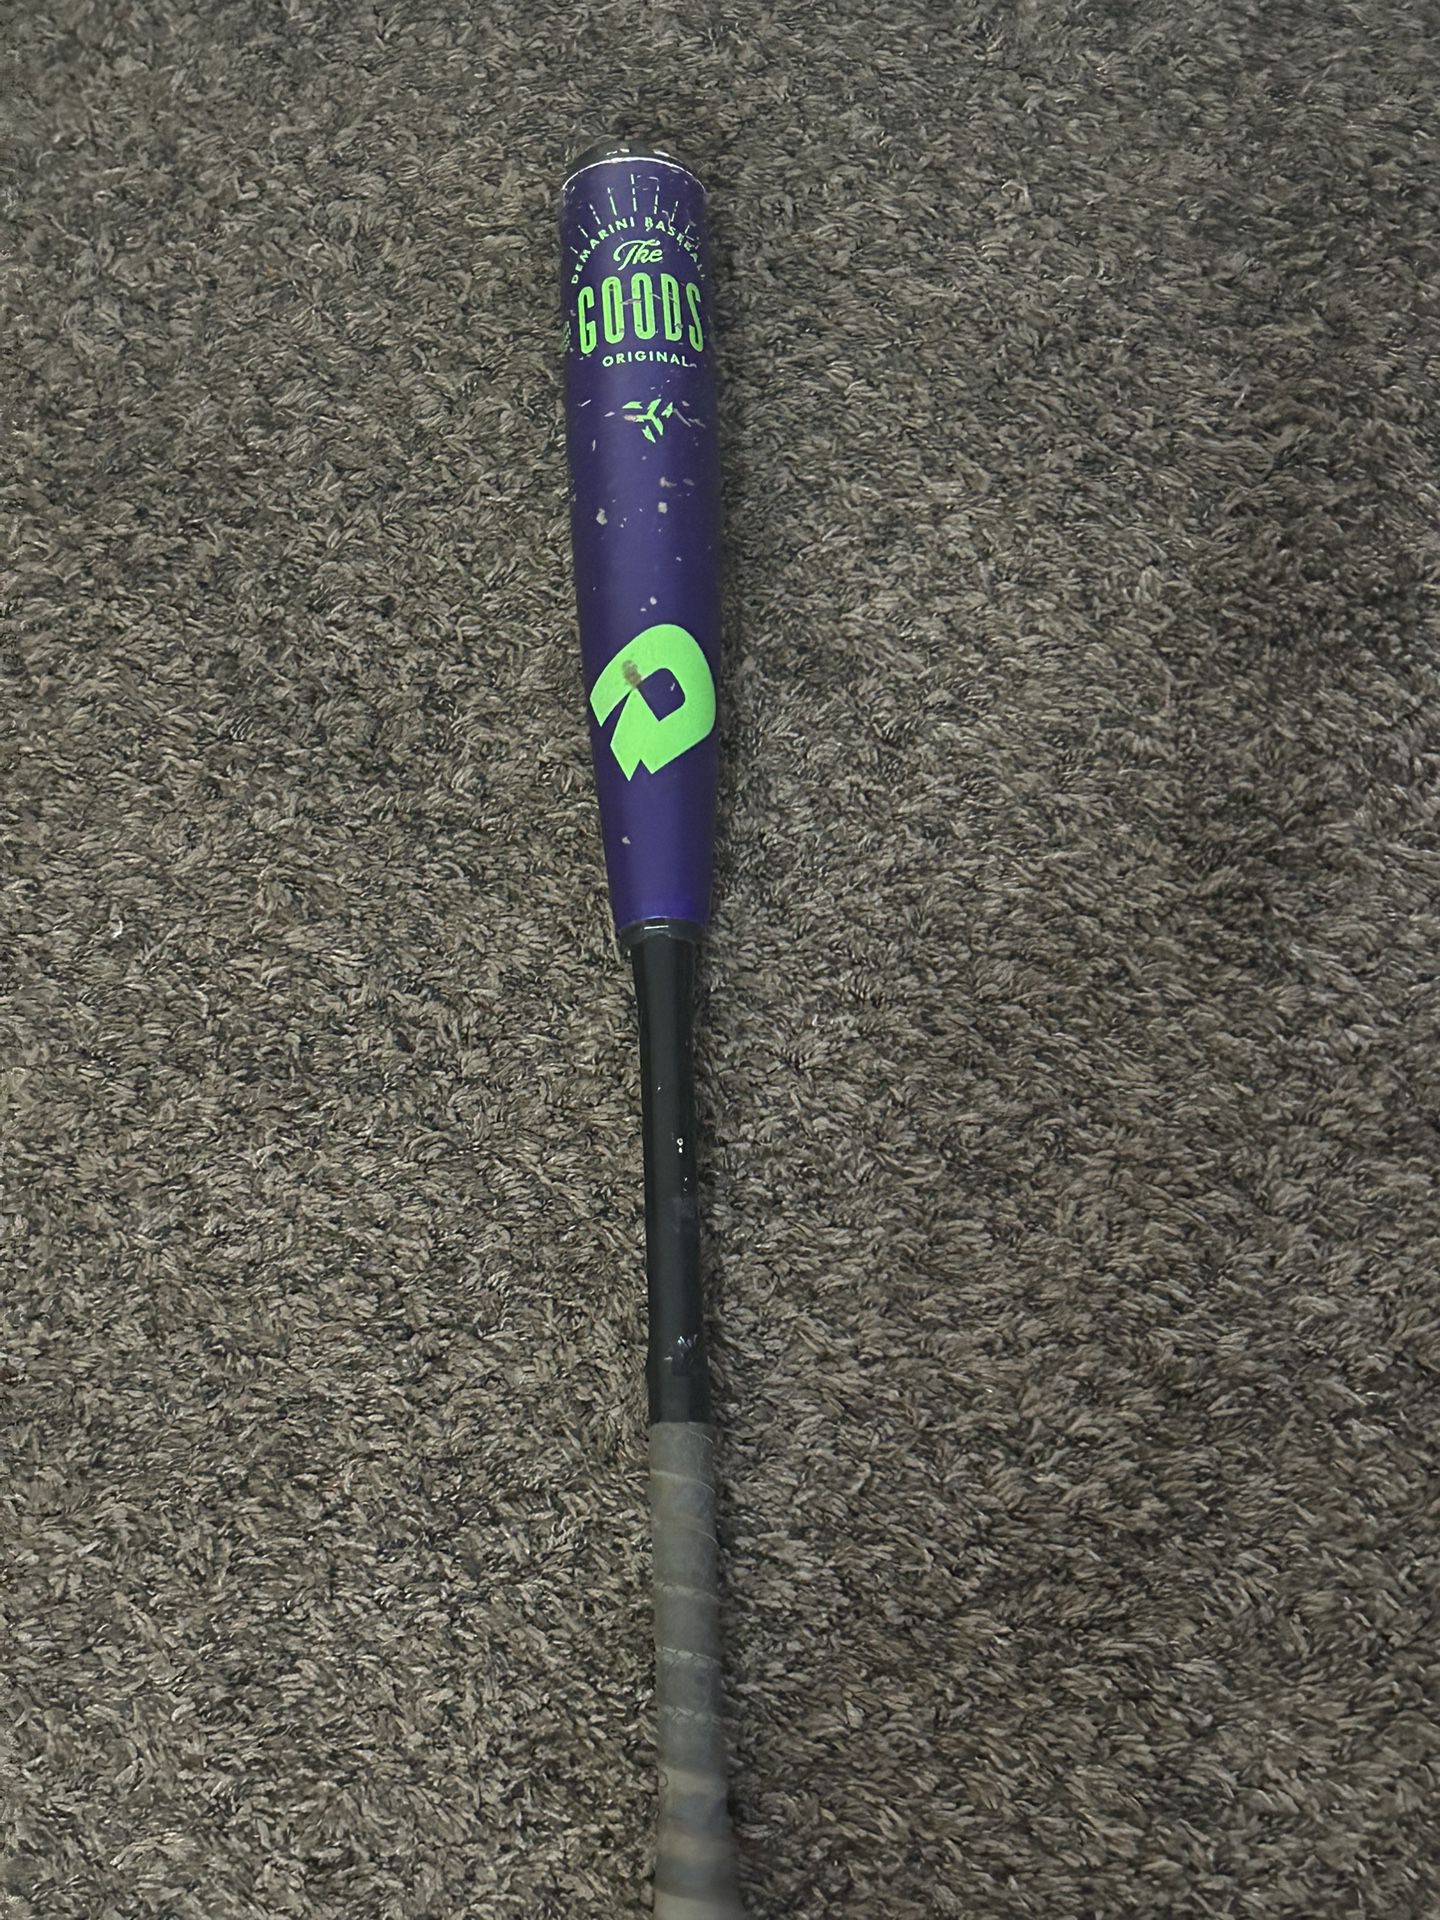 The Goods Baseball Bat